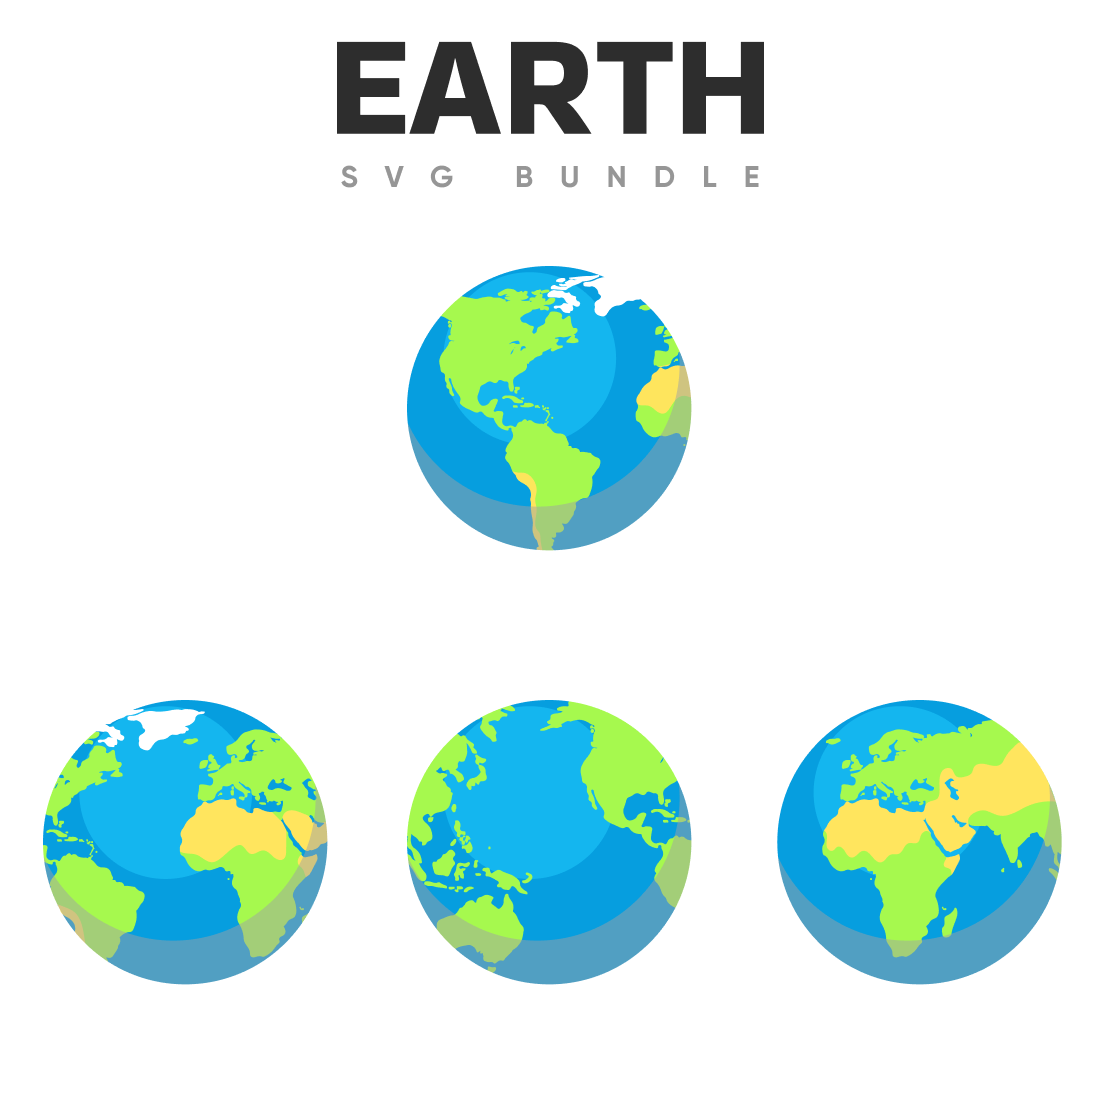 Earth svg bundle.